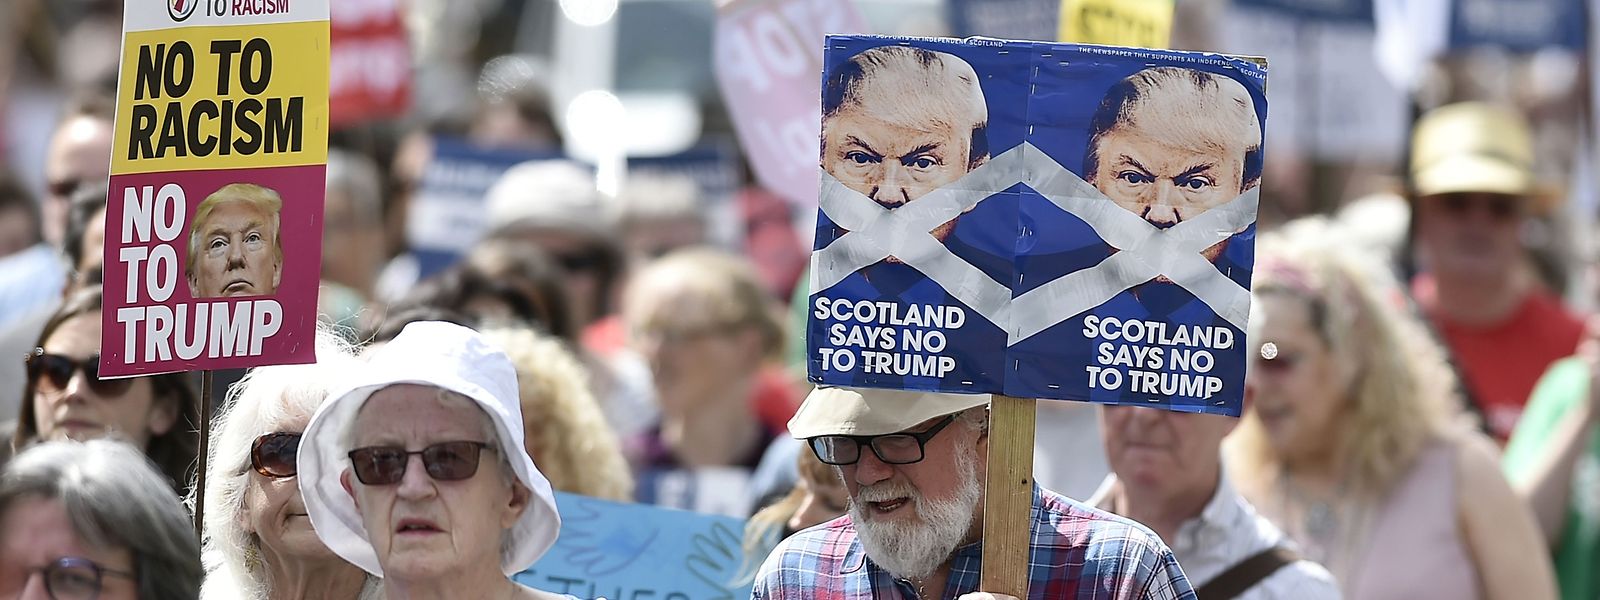 Unter anderem kam es in Edinburgh zu Protesten gegen Trump und seine Politik.